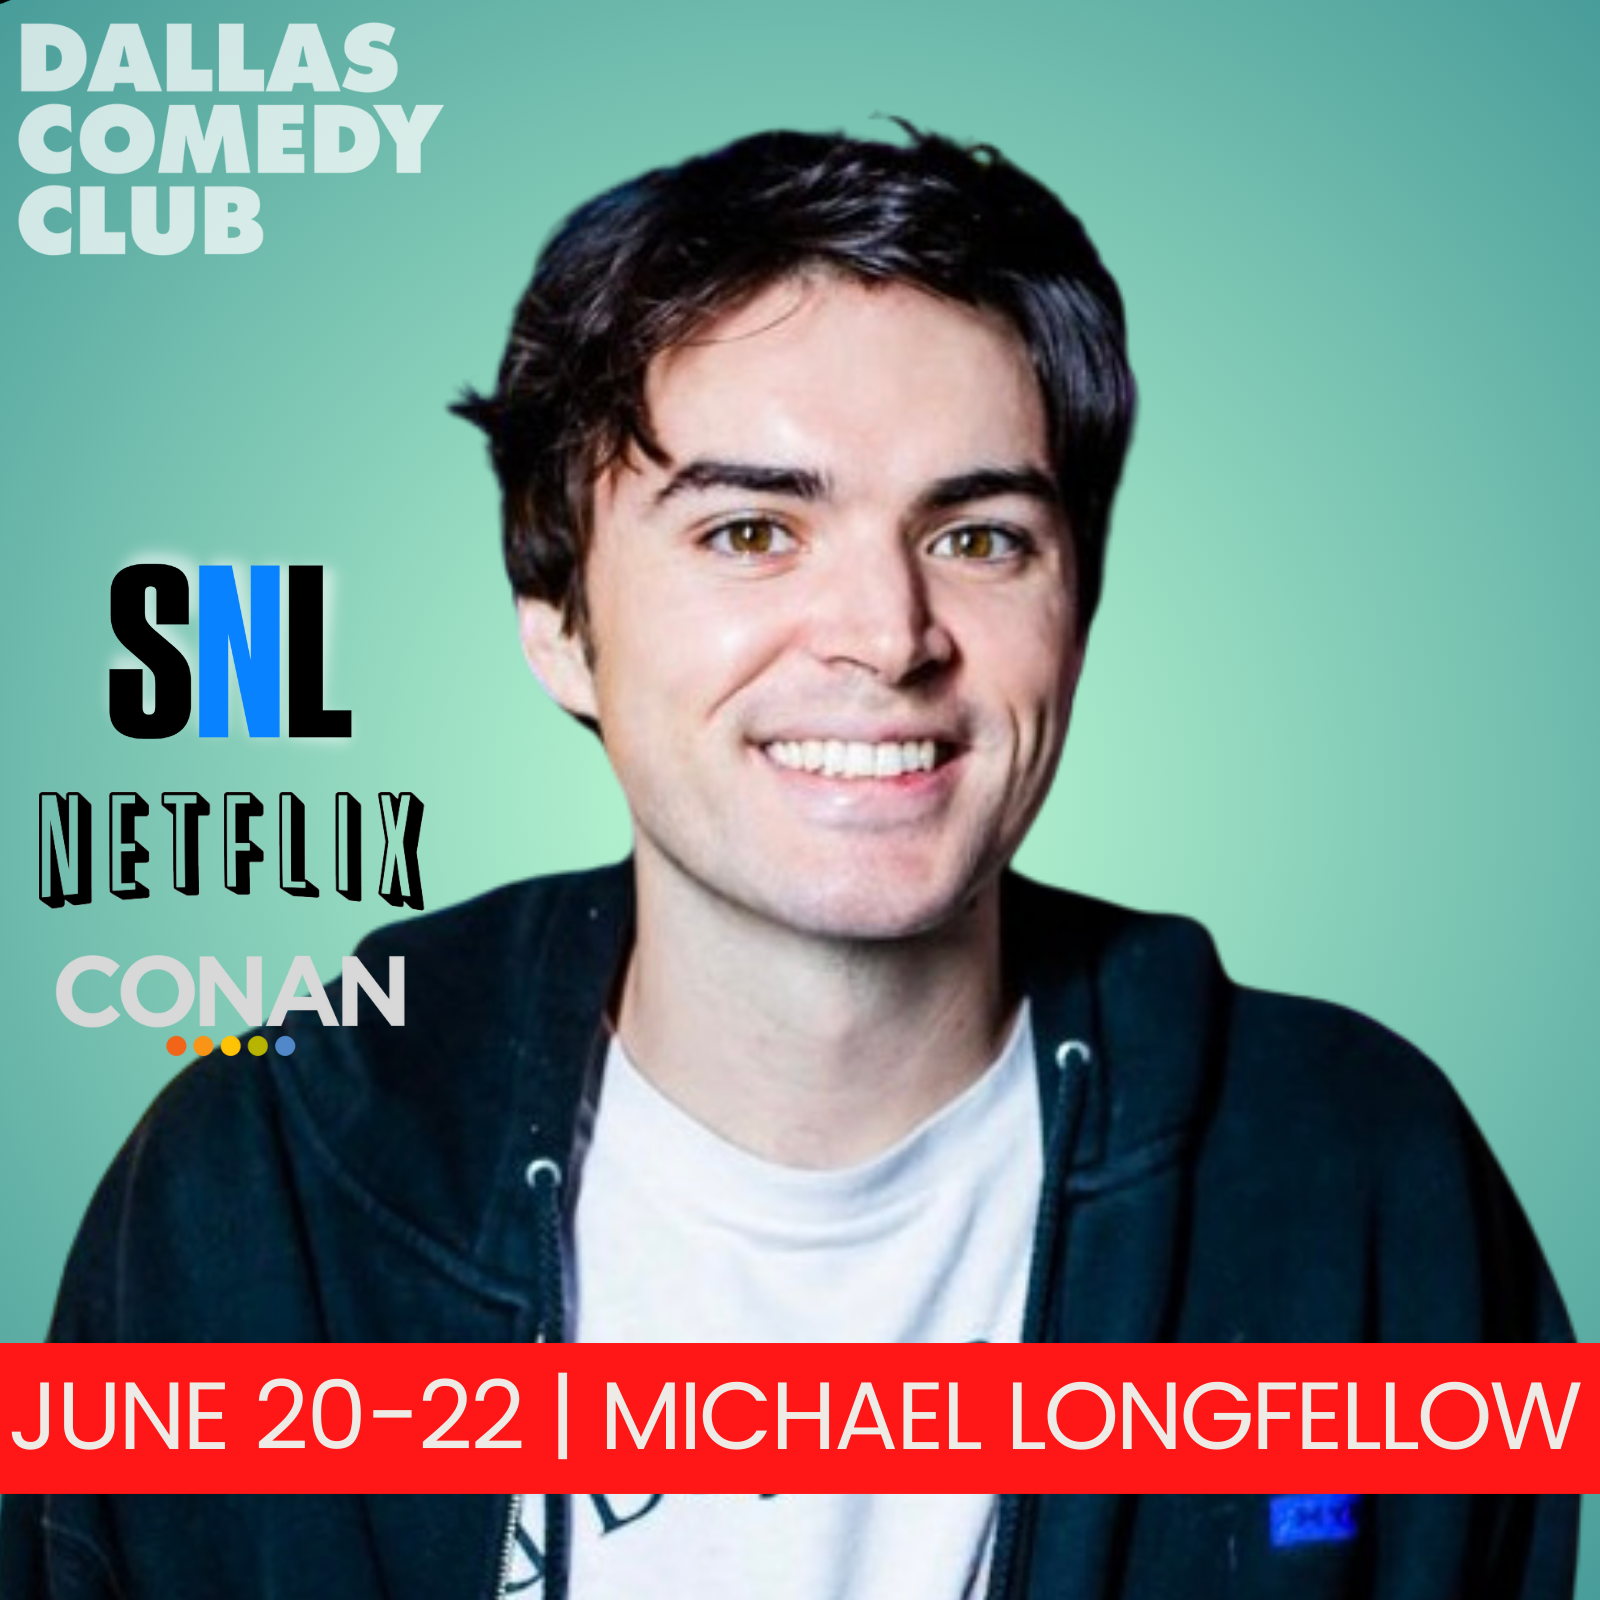 Michael Longfellow at Dallas Comedy Club